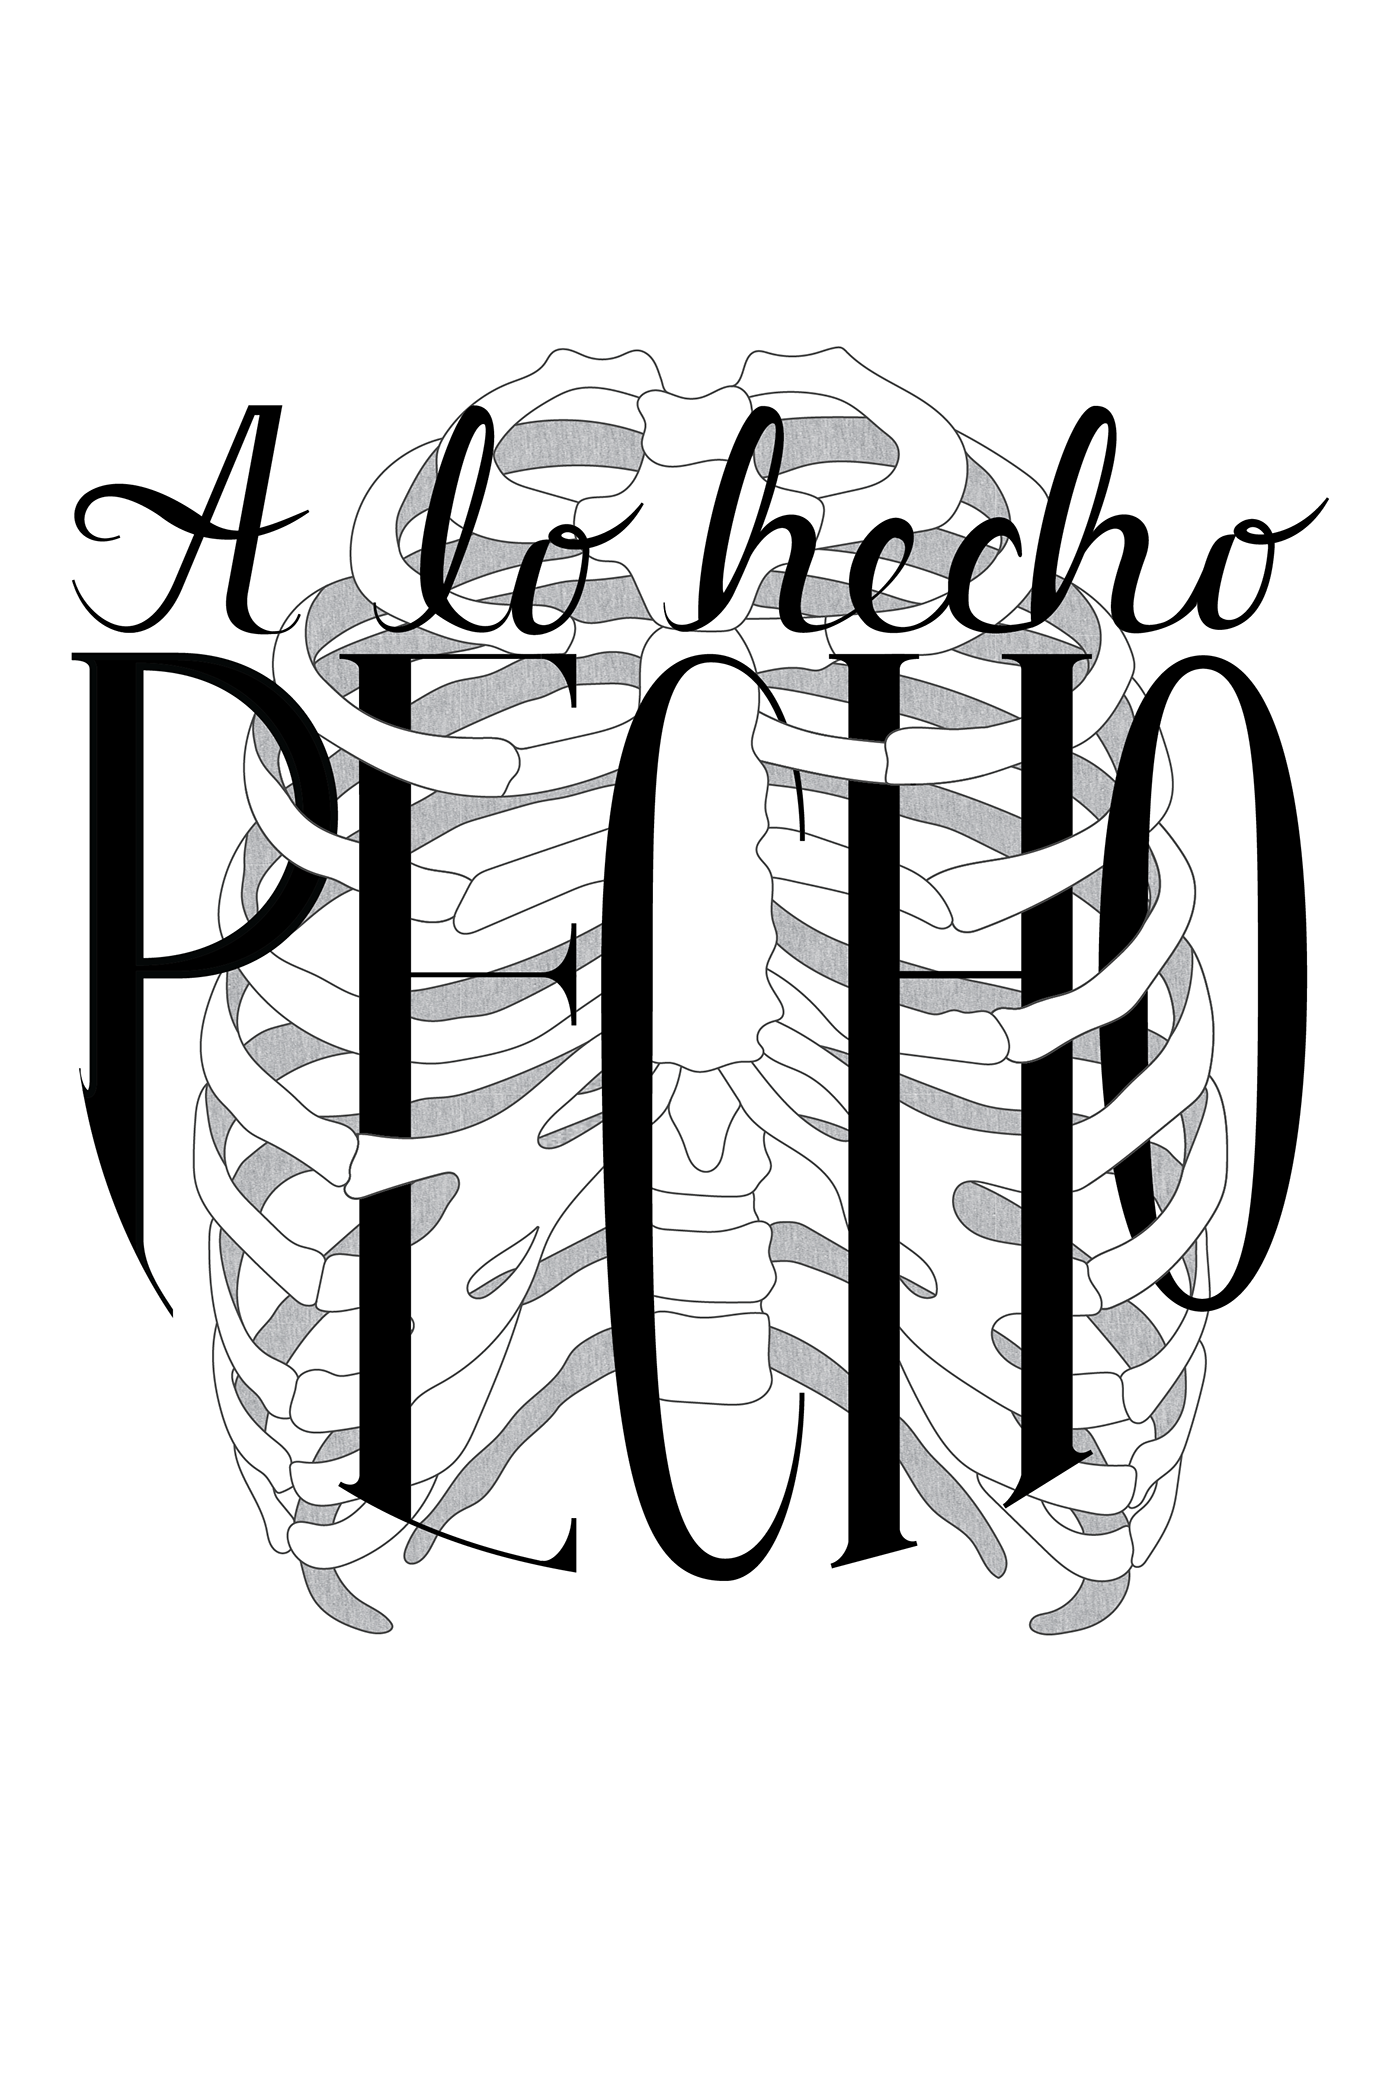 typography   Experimental Typography ribs lo hecho pecho colombia Dichos Typographic composition ilustracion composición universidad los andes